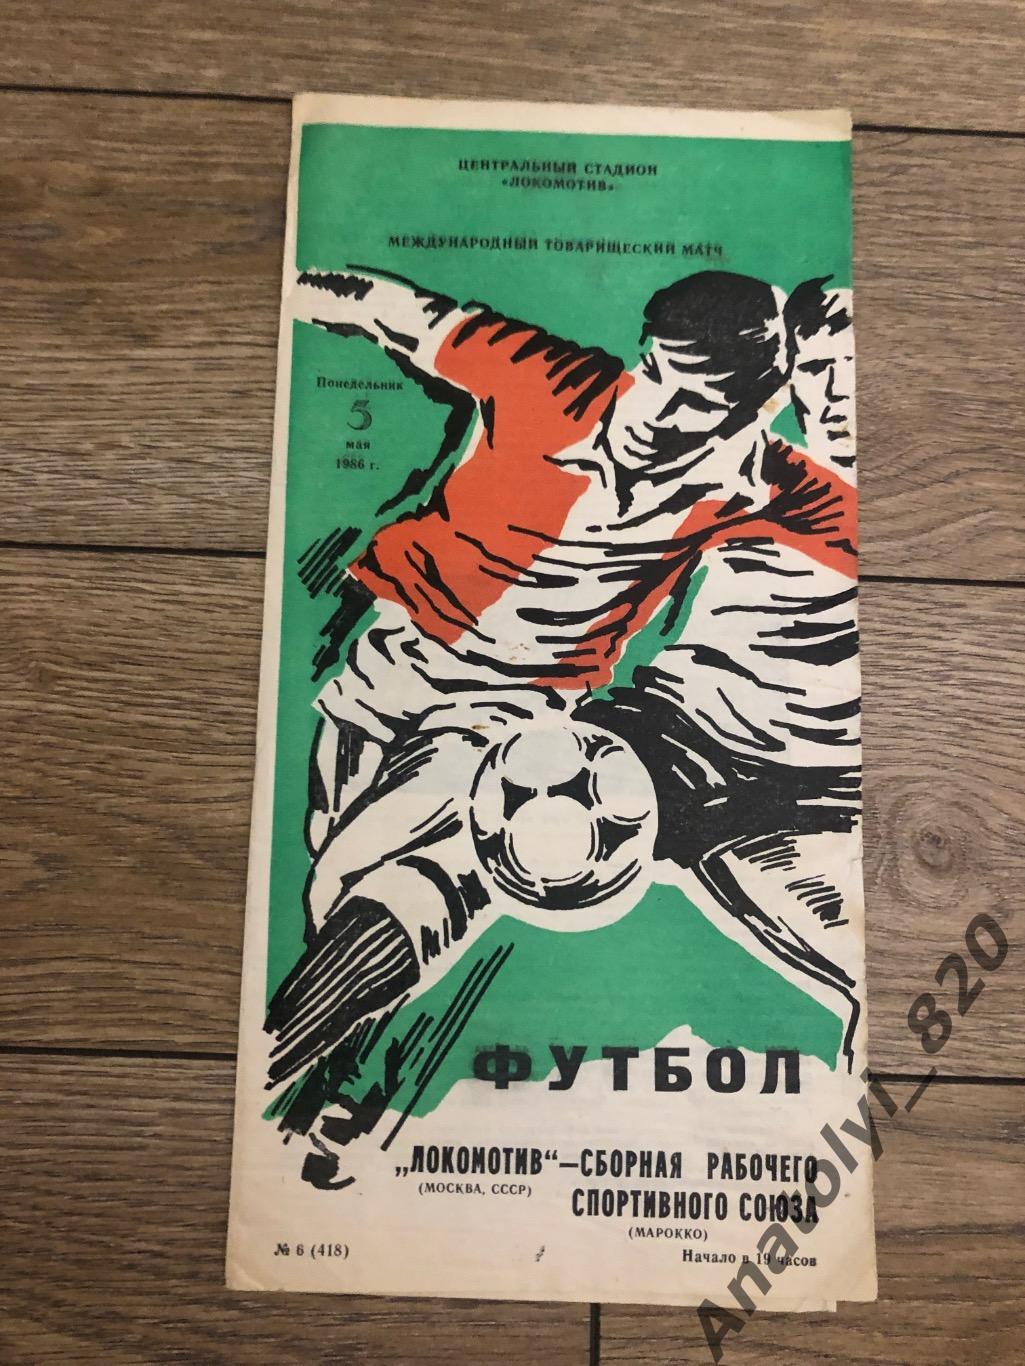 Локомотив Москва - сборная рабочего спортивного союза Марокко, 05.05.1986